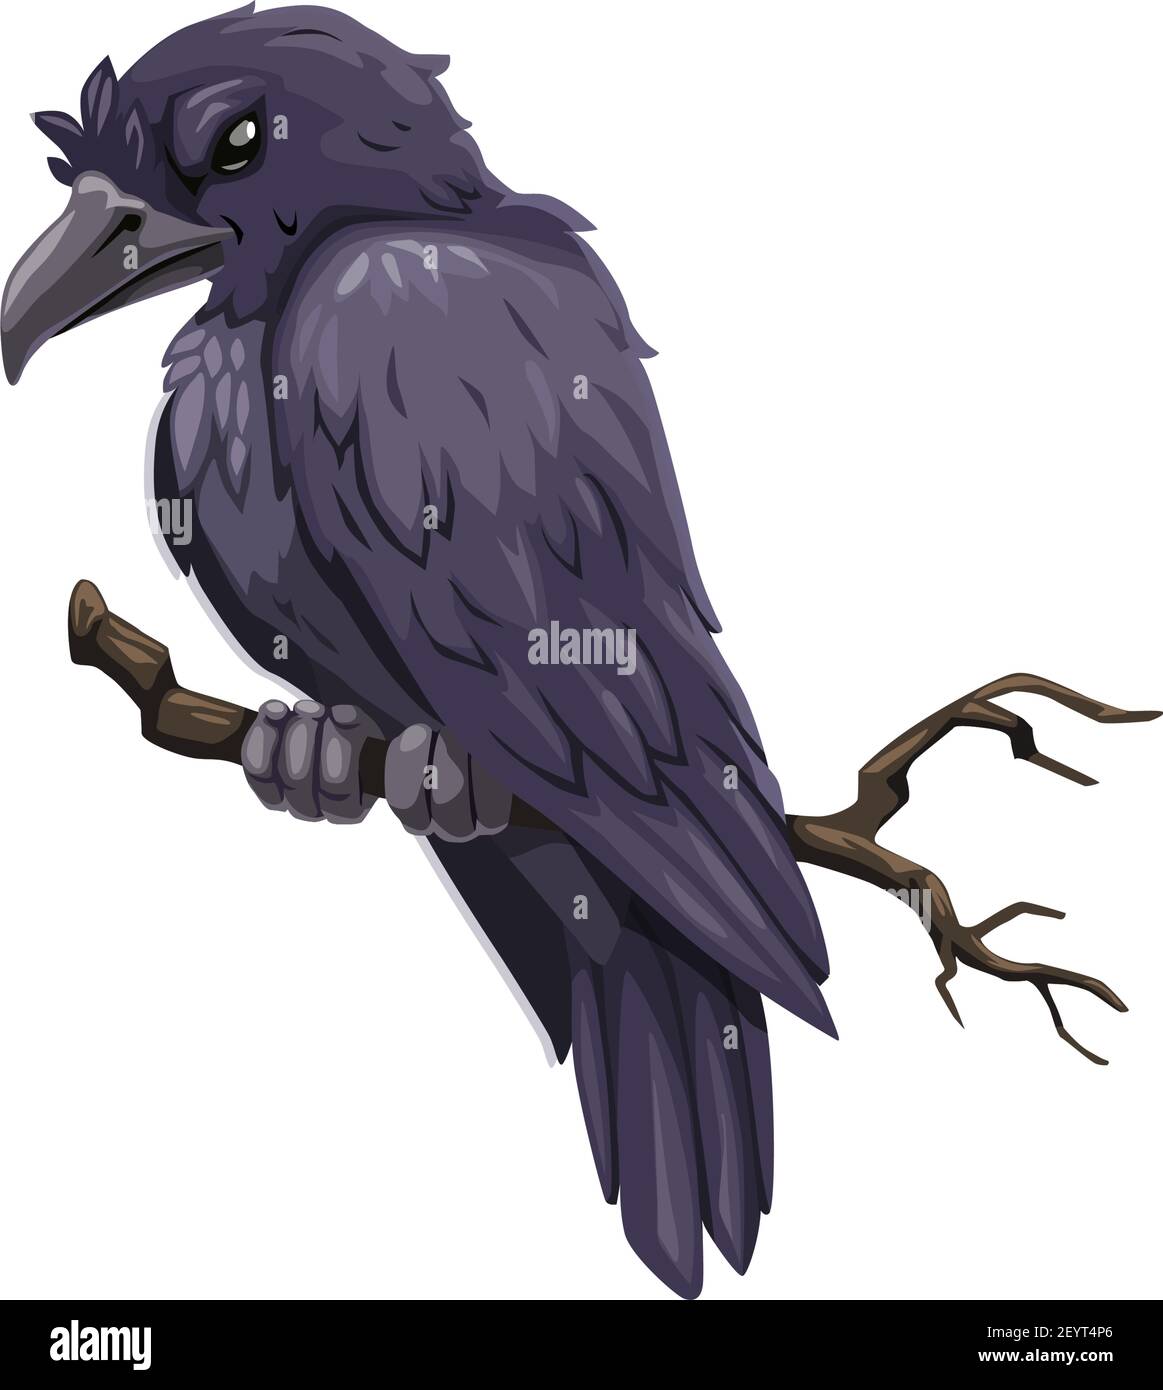 Krähe auf Zweig Symbol, böse gefiederte Tier, isoliert Vektor. Rabe auf  Baum, unheimlicher Vogel Stock-Vektorgrafik - Alamy